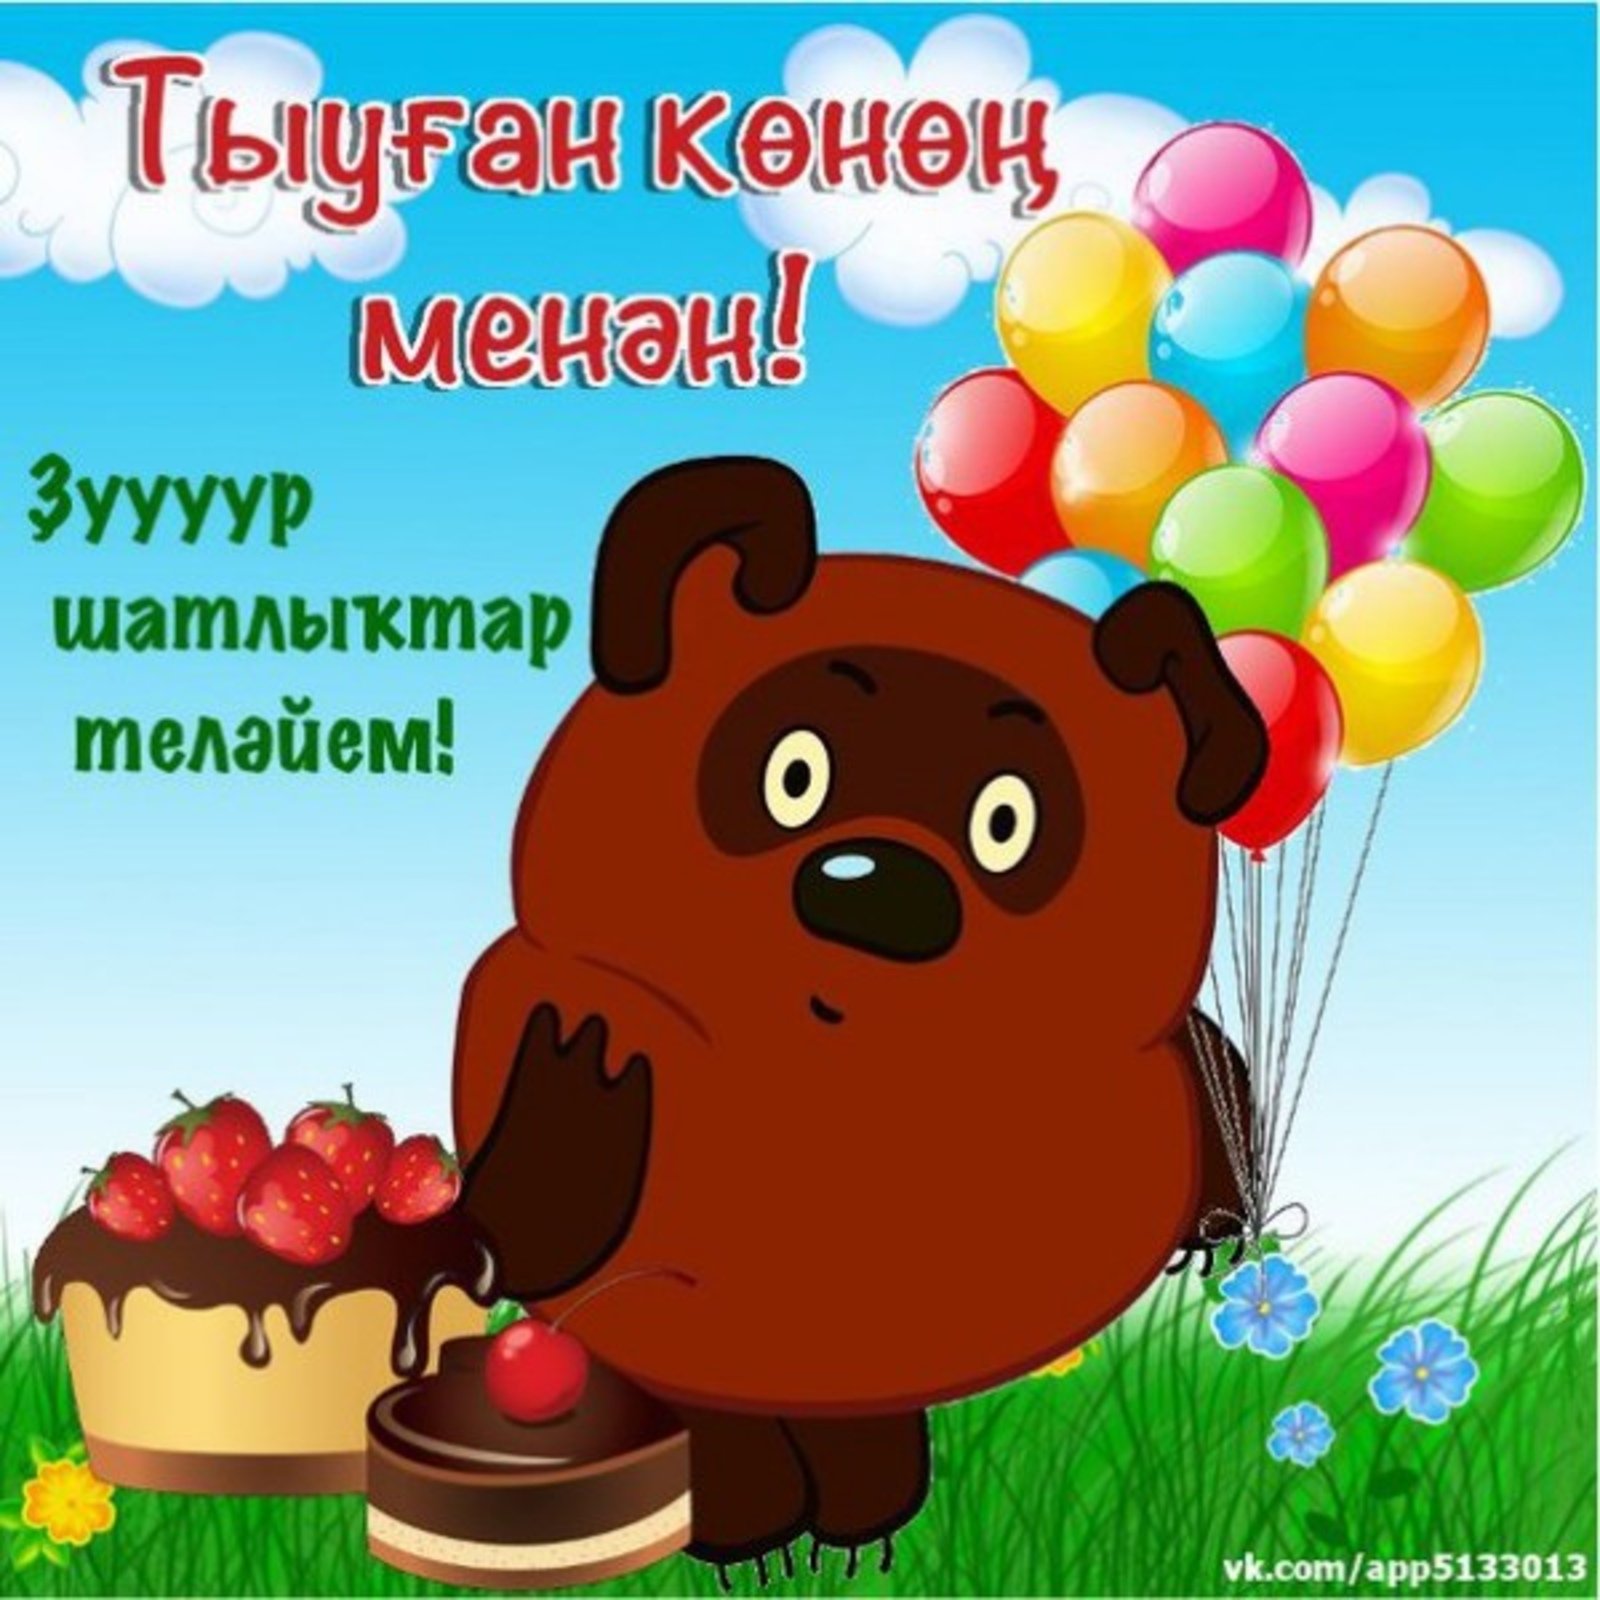 С днем рождения маме на башкирском. Поздравления с днём рождения на башкирском языке. Башкирские пожелания на день рождения. Поздравления с днём рождения мужчине на башкирском языке. Поздравление с юбилеем на башкирском языке.